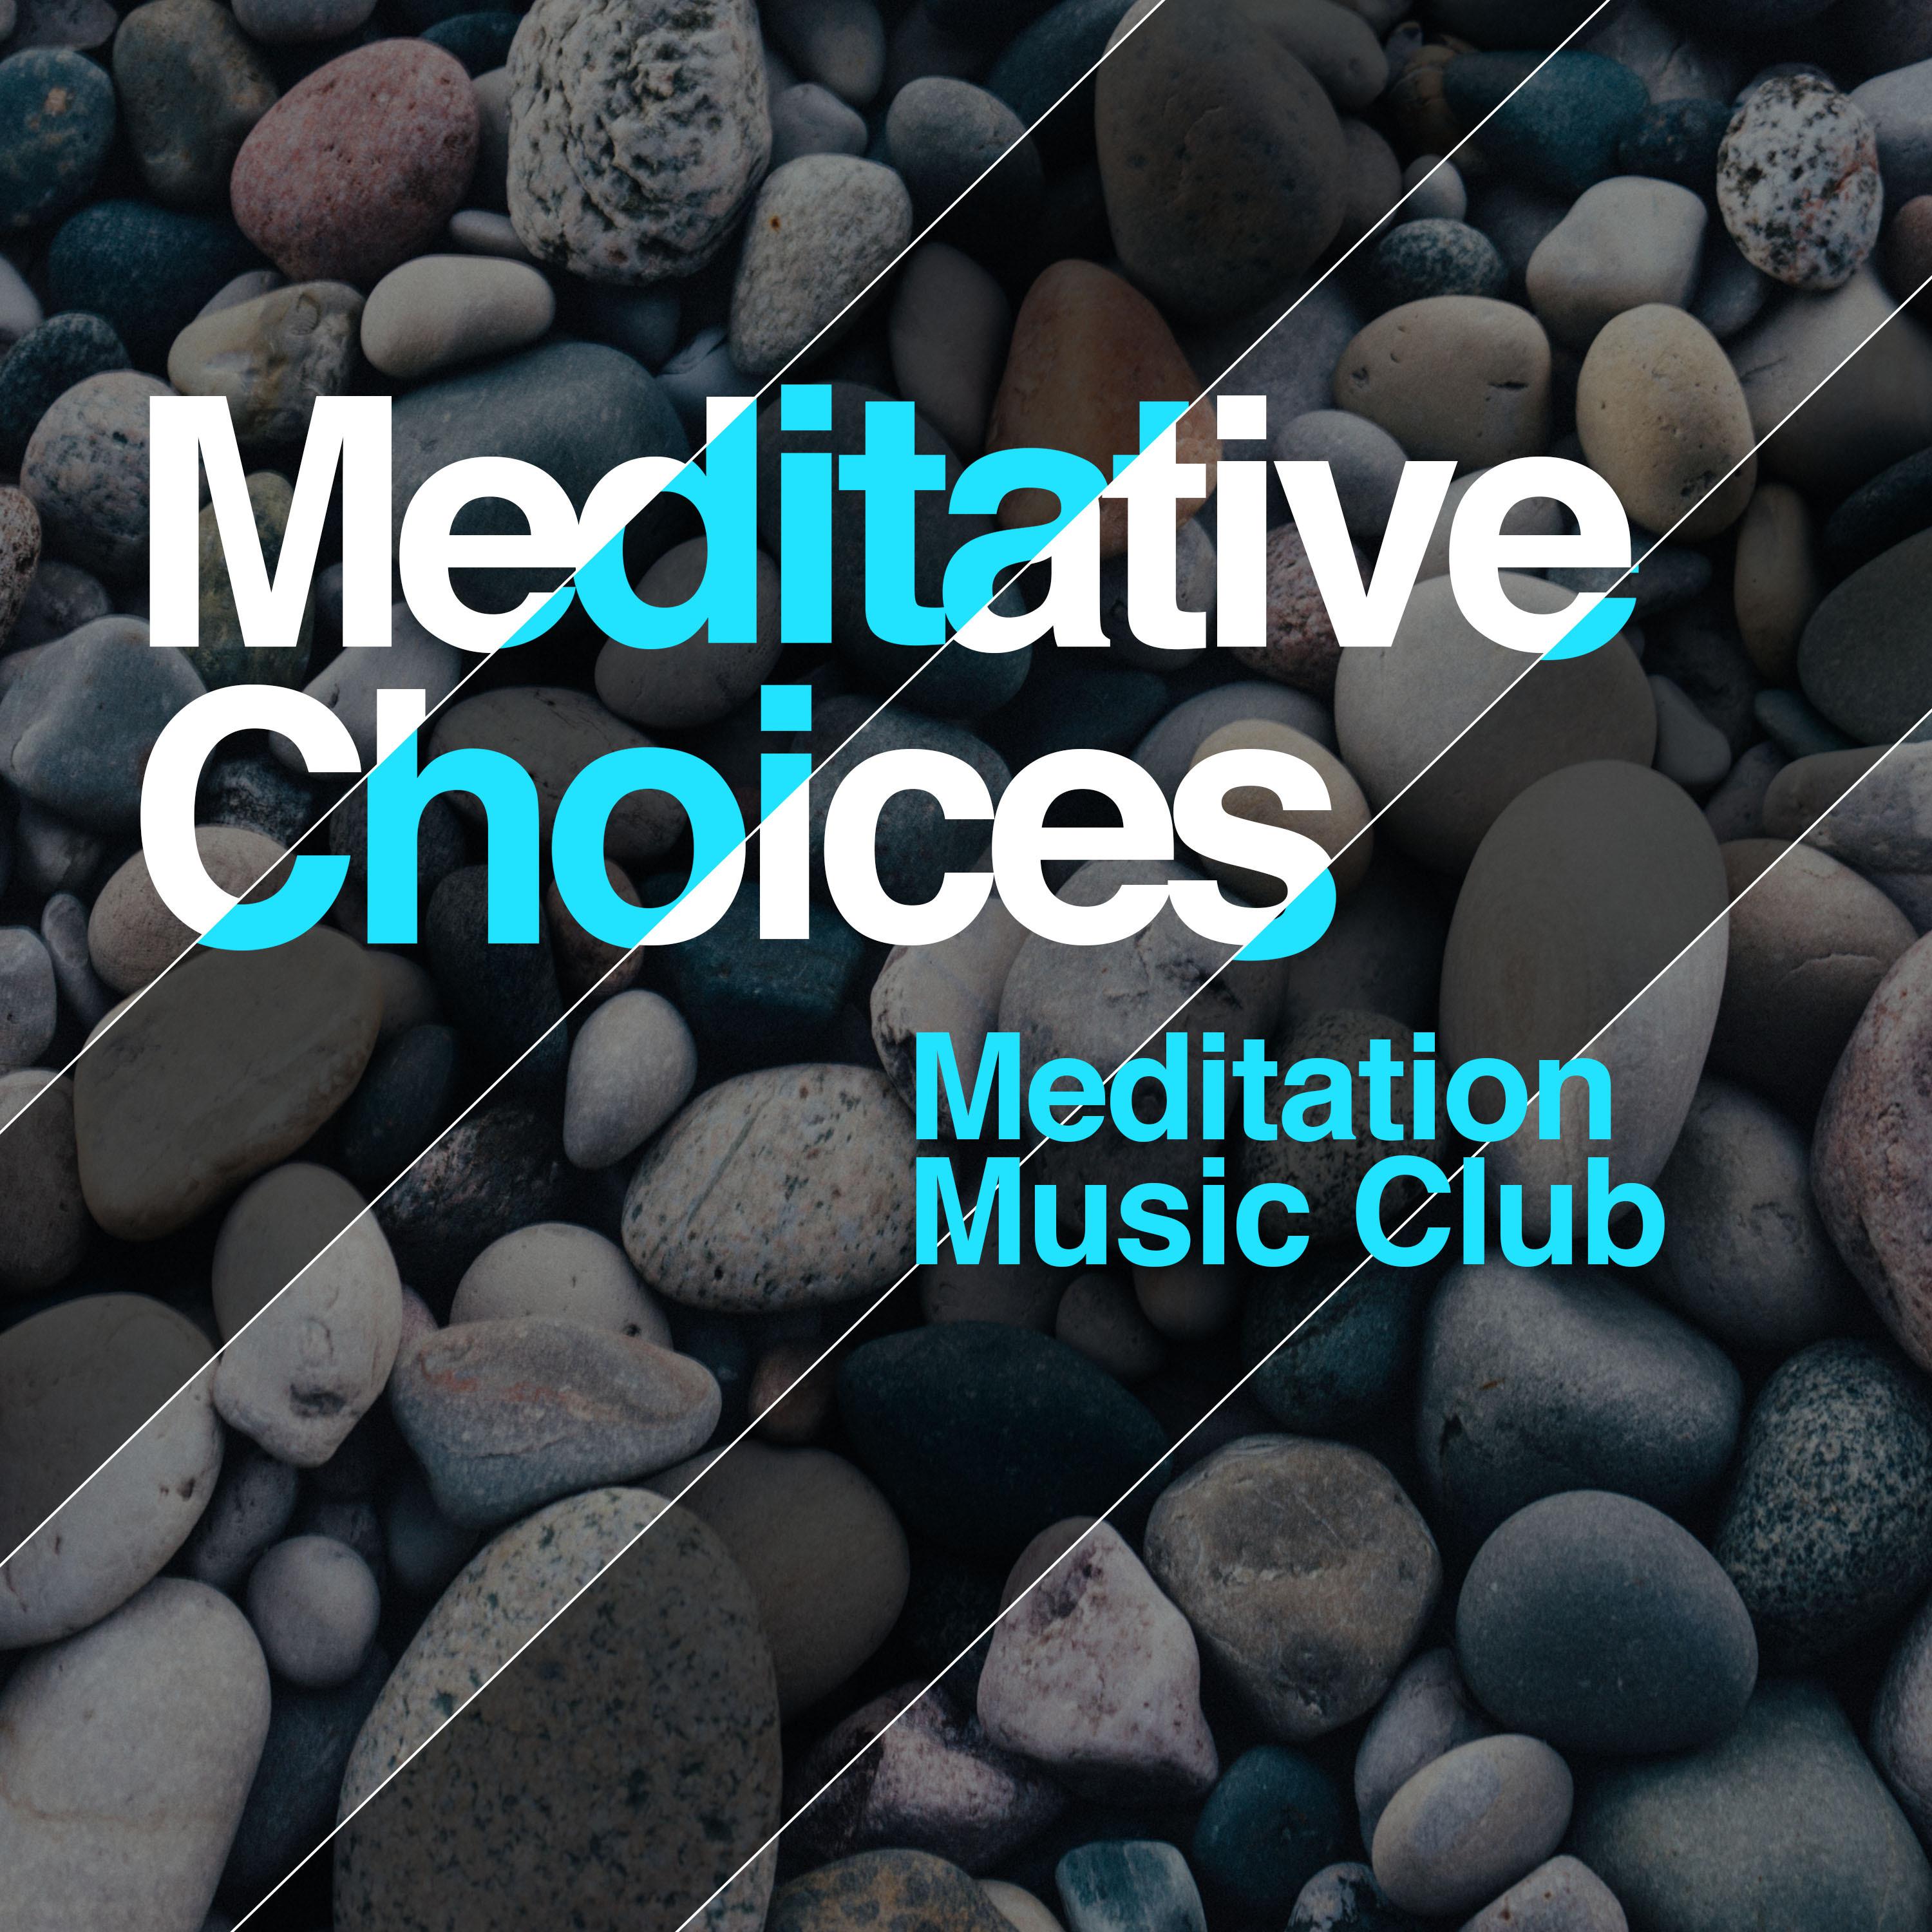 Meditative Choices